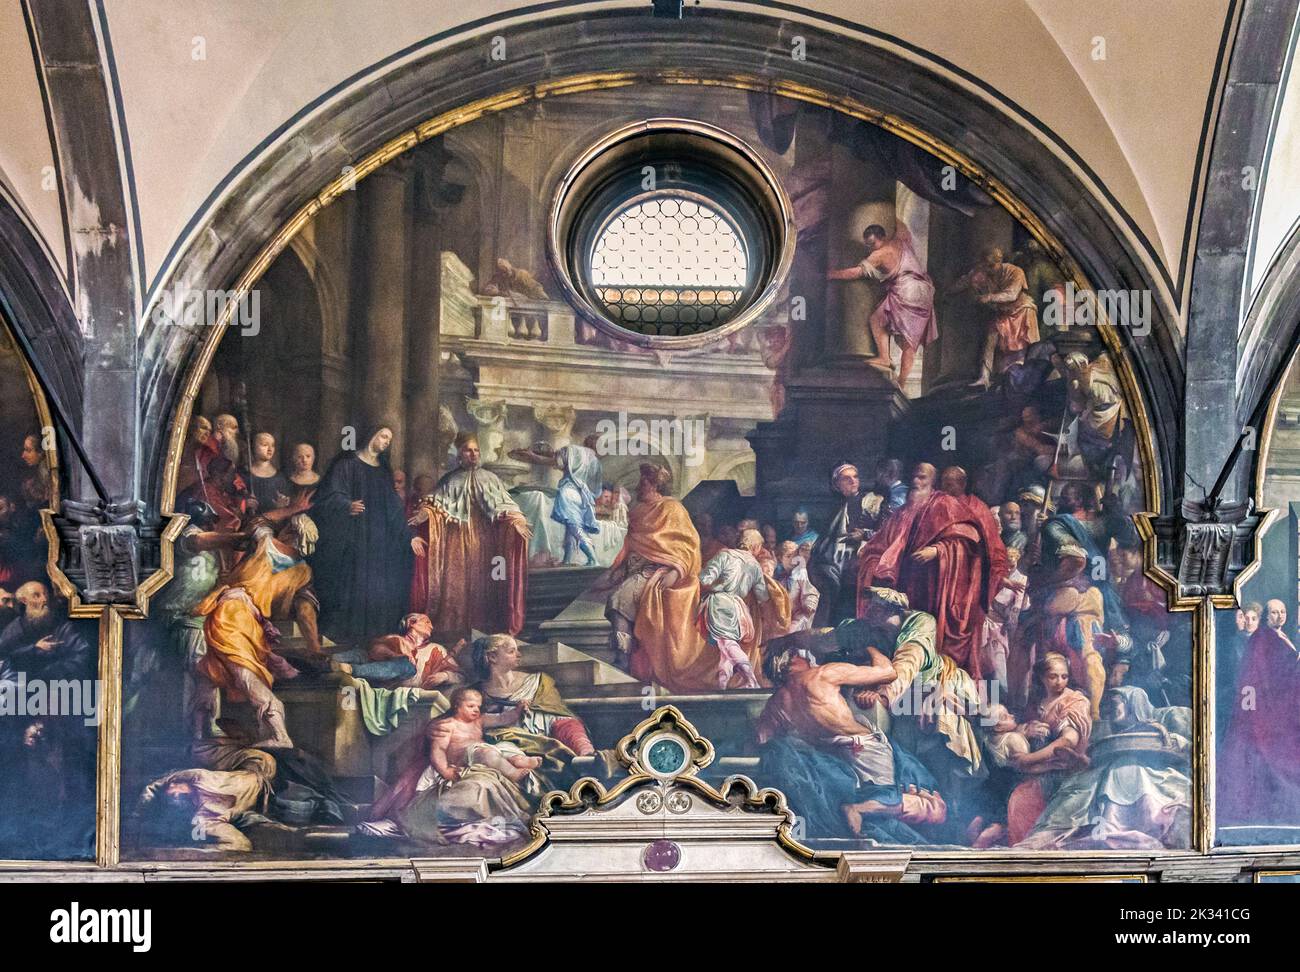 Italia Veneto Venezia Chiesa di San Zaccaria fresco Visita al monastero dell'Imperatore otto III, nell'anno 1001, accompagnato dal Doge Pietro Orseolo II - Giovanni Antonio Fumiani Foto Stock